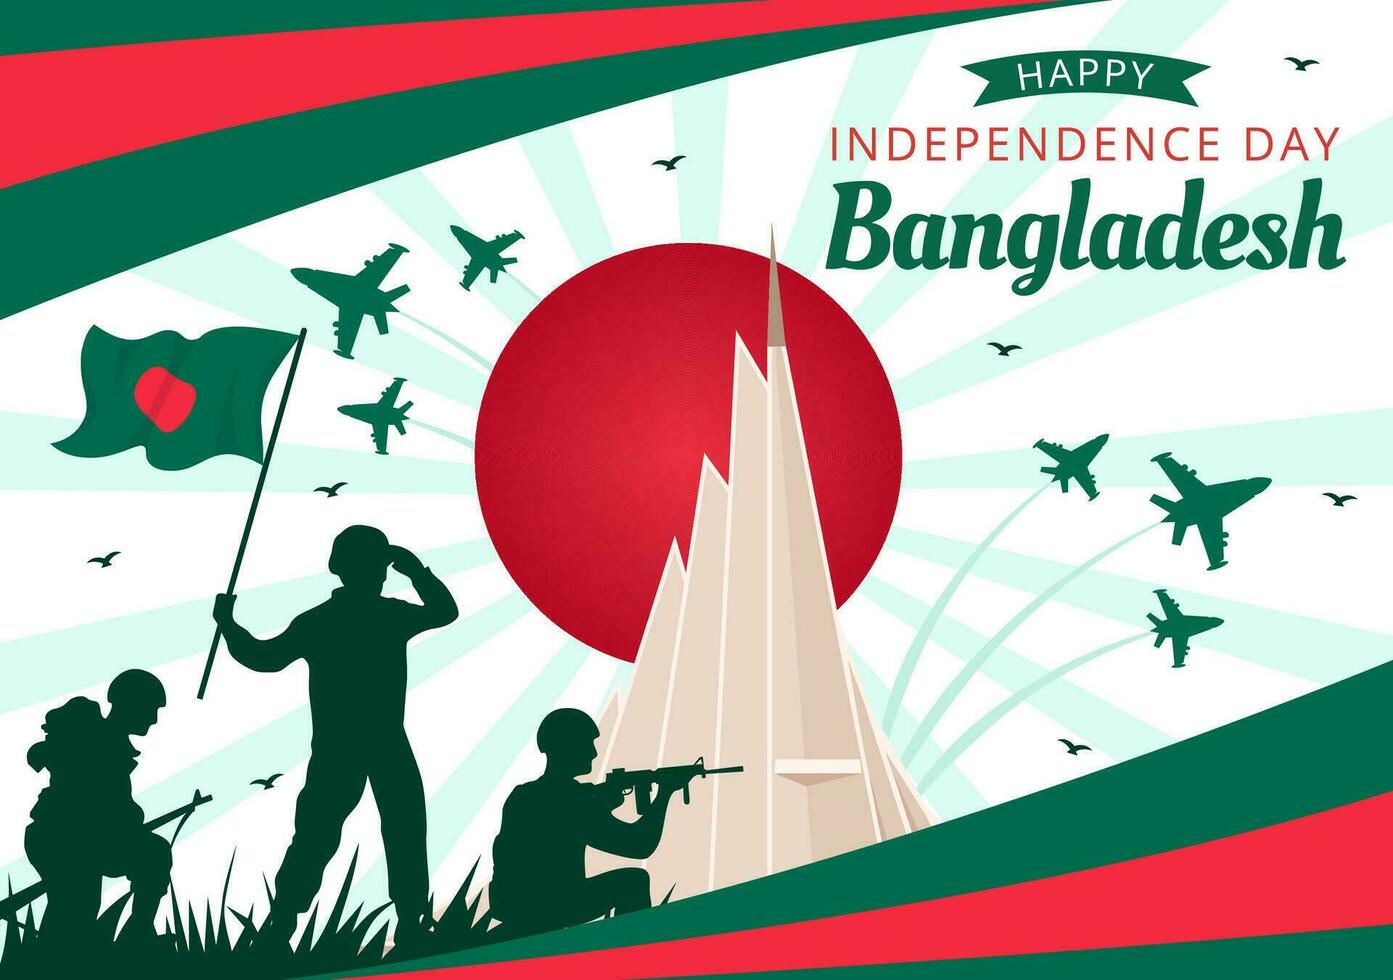 contento Bangladesh independencia día vector ilustración en 26 marzo con ondulación bandera y nacional Monumento en fiesta plano dibujos animados antecedentes